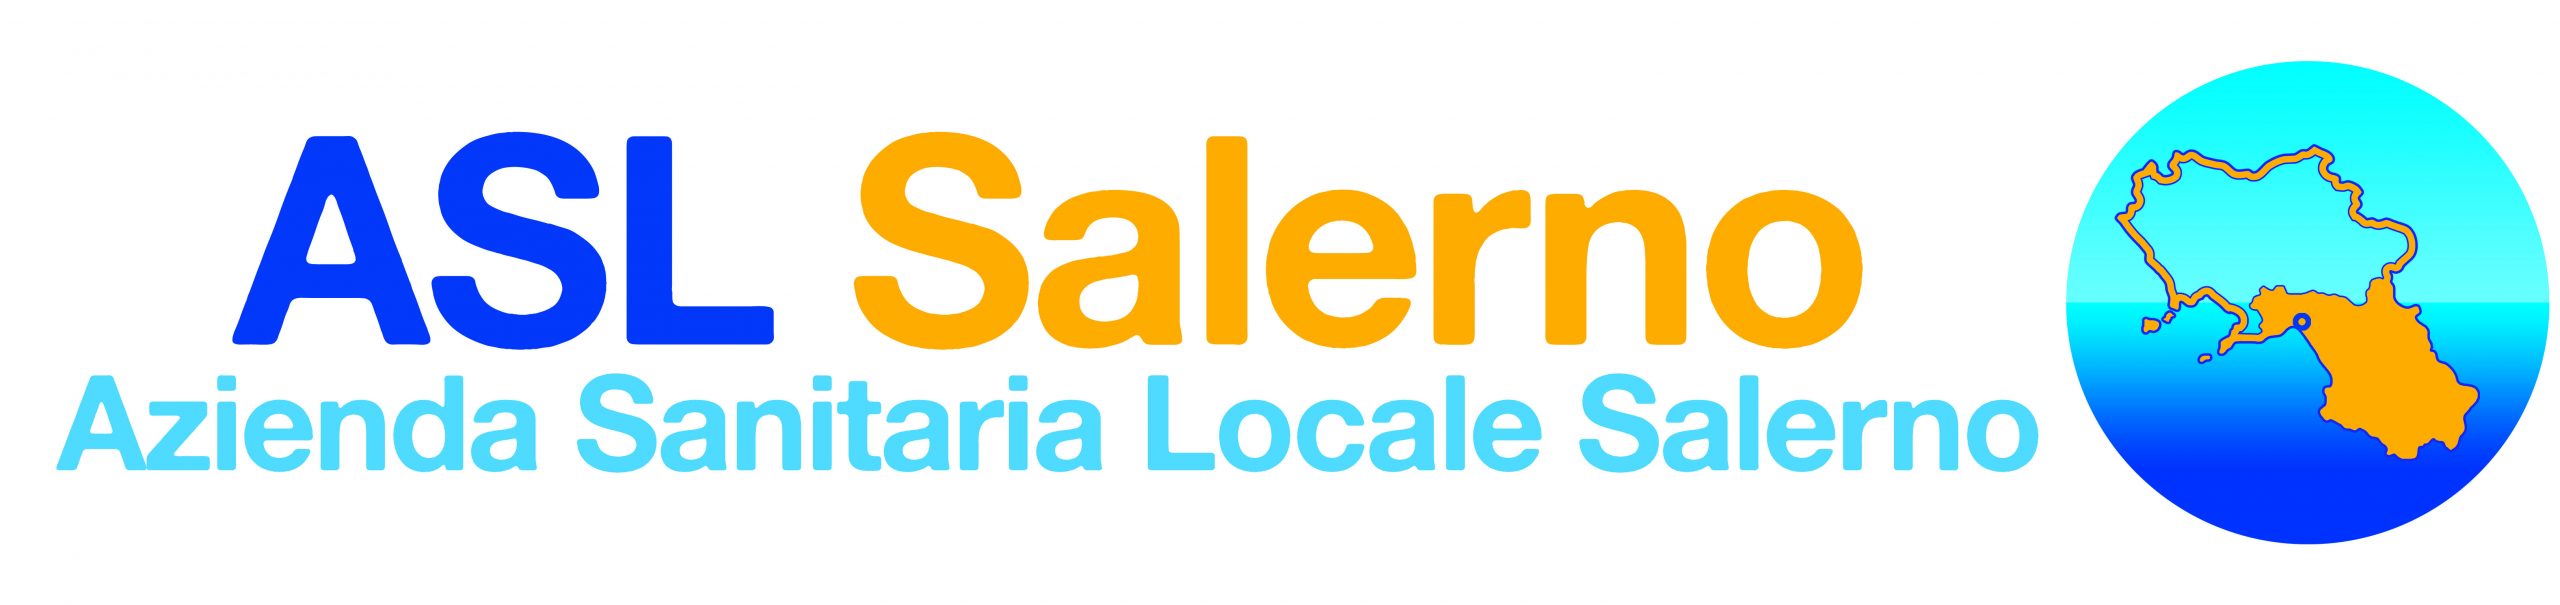 Salerno: Asl, al via Piano Operativo Regionale per recupero Liste di attesa